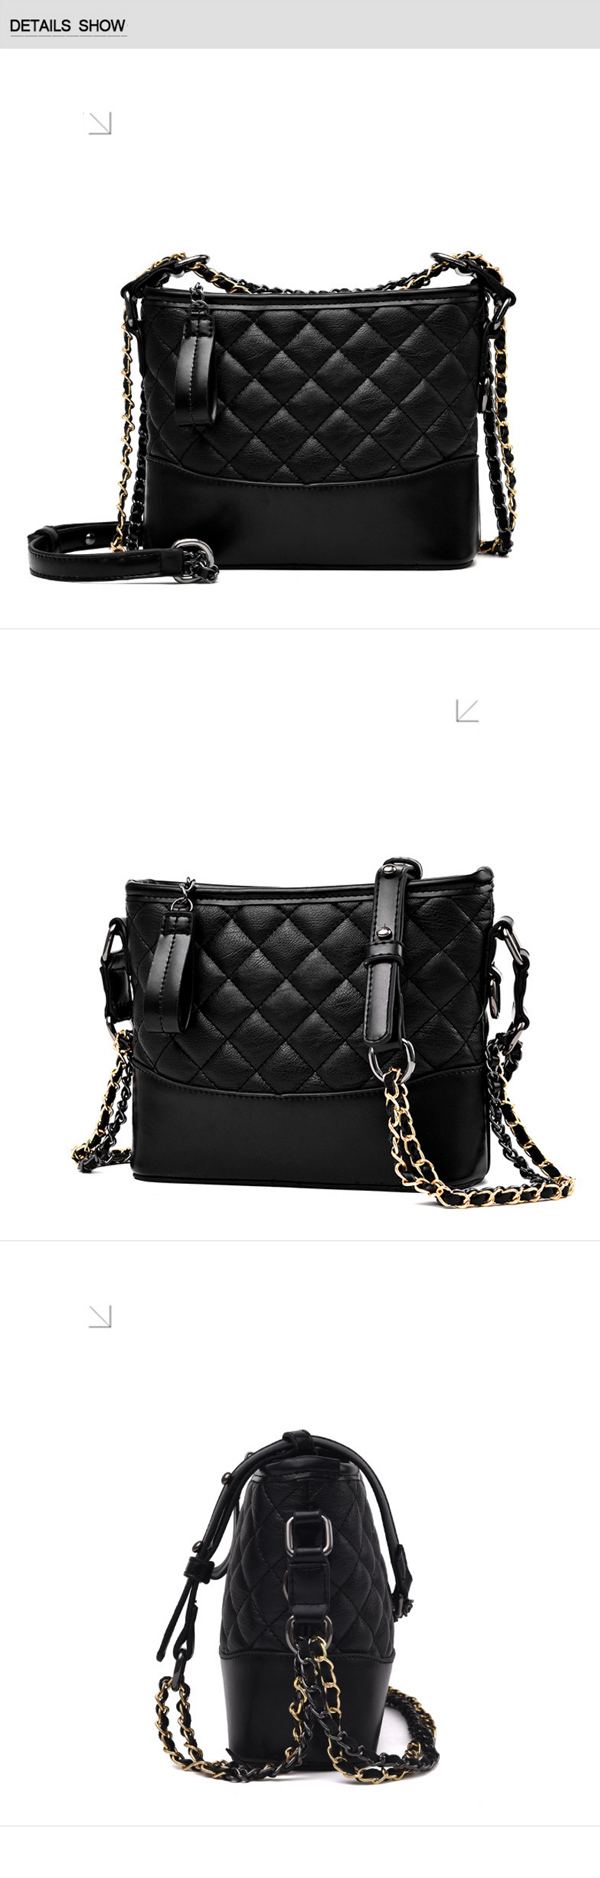 Fashion-Shoulder-Bag-Elegant-Crossbody-Purse-Saddle-Bag-for-Women-1254471